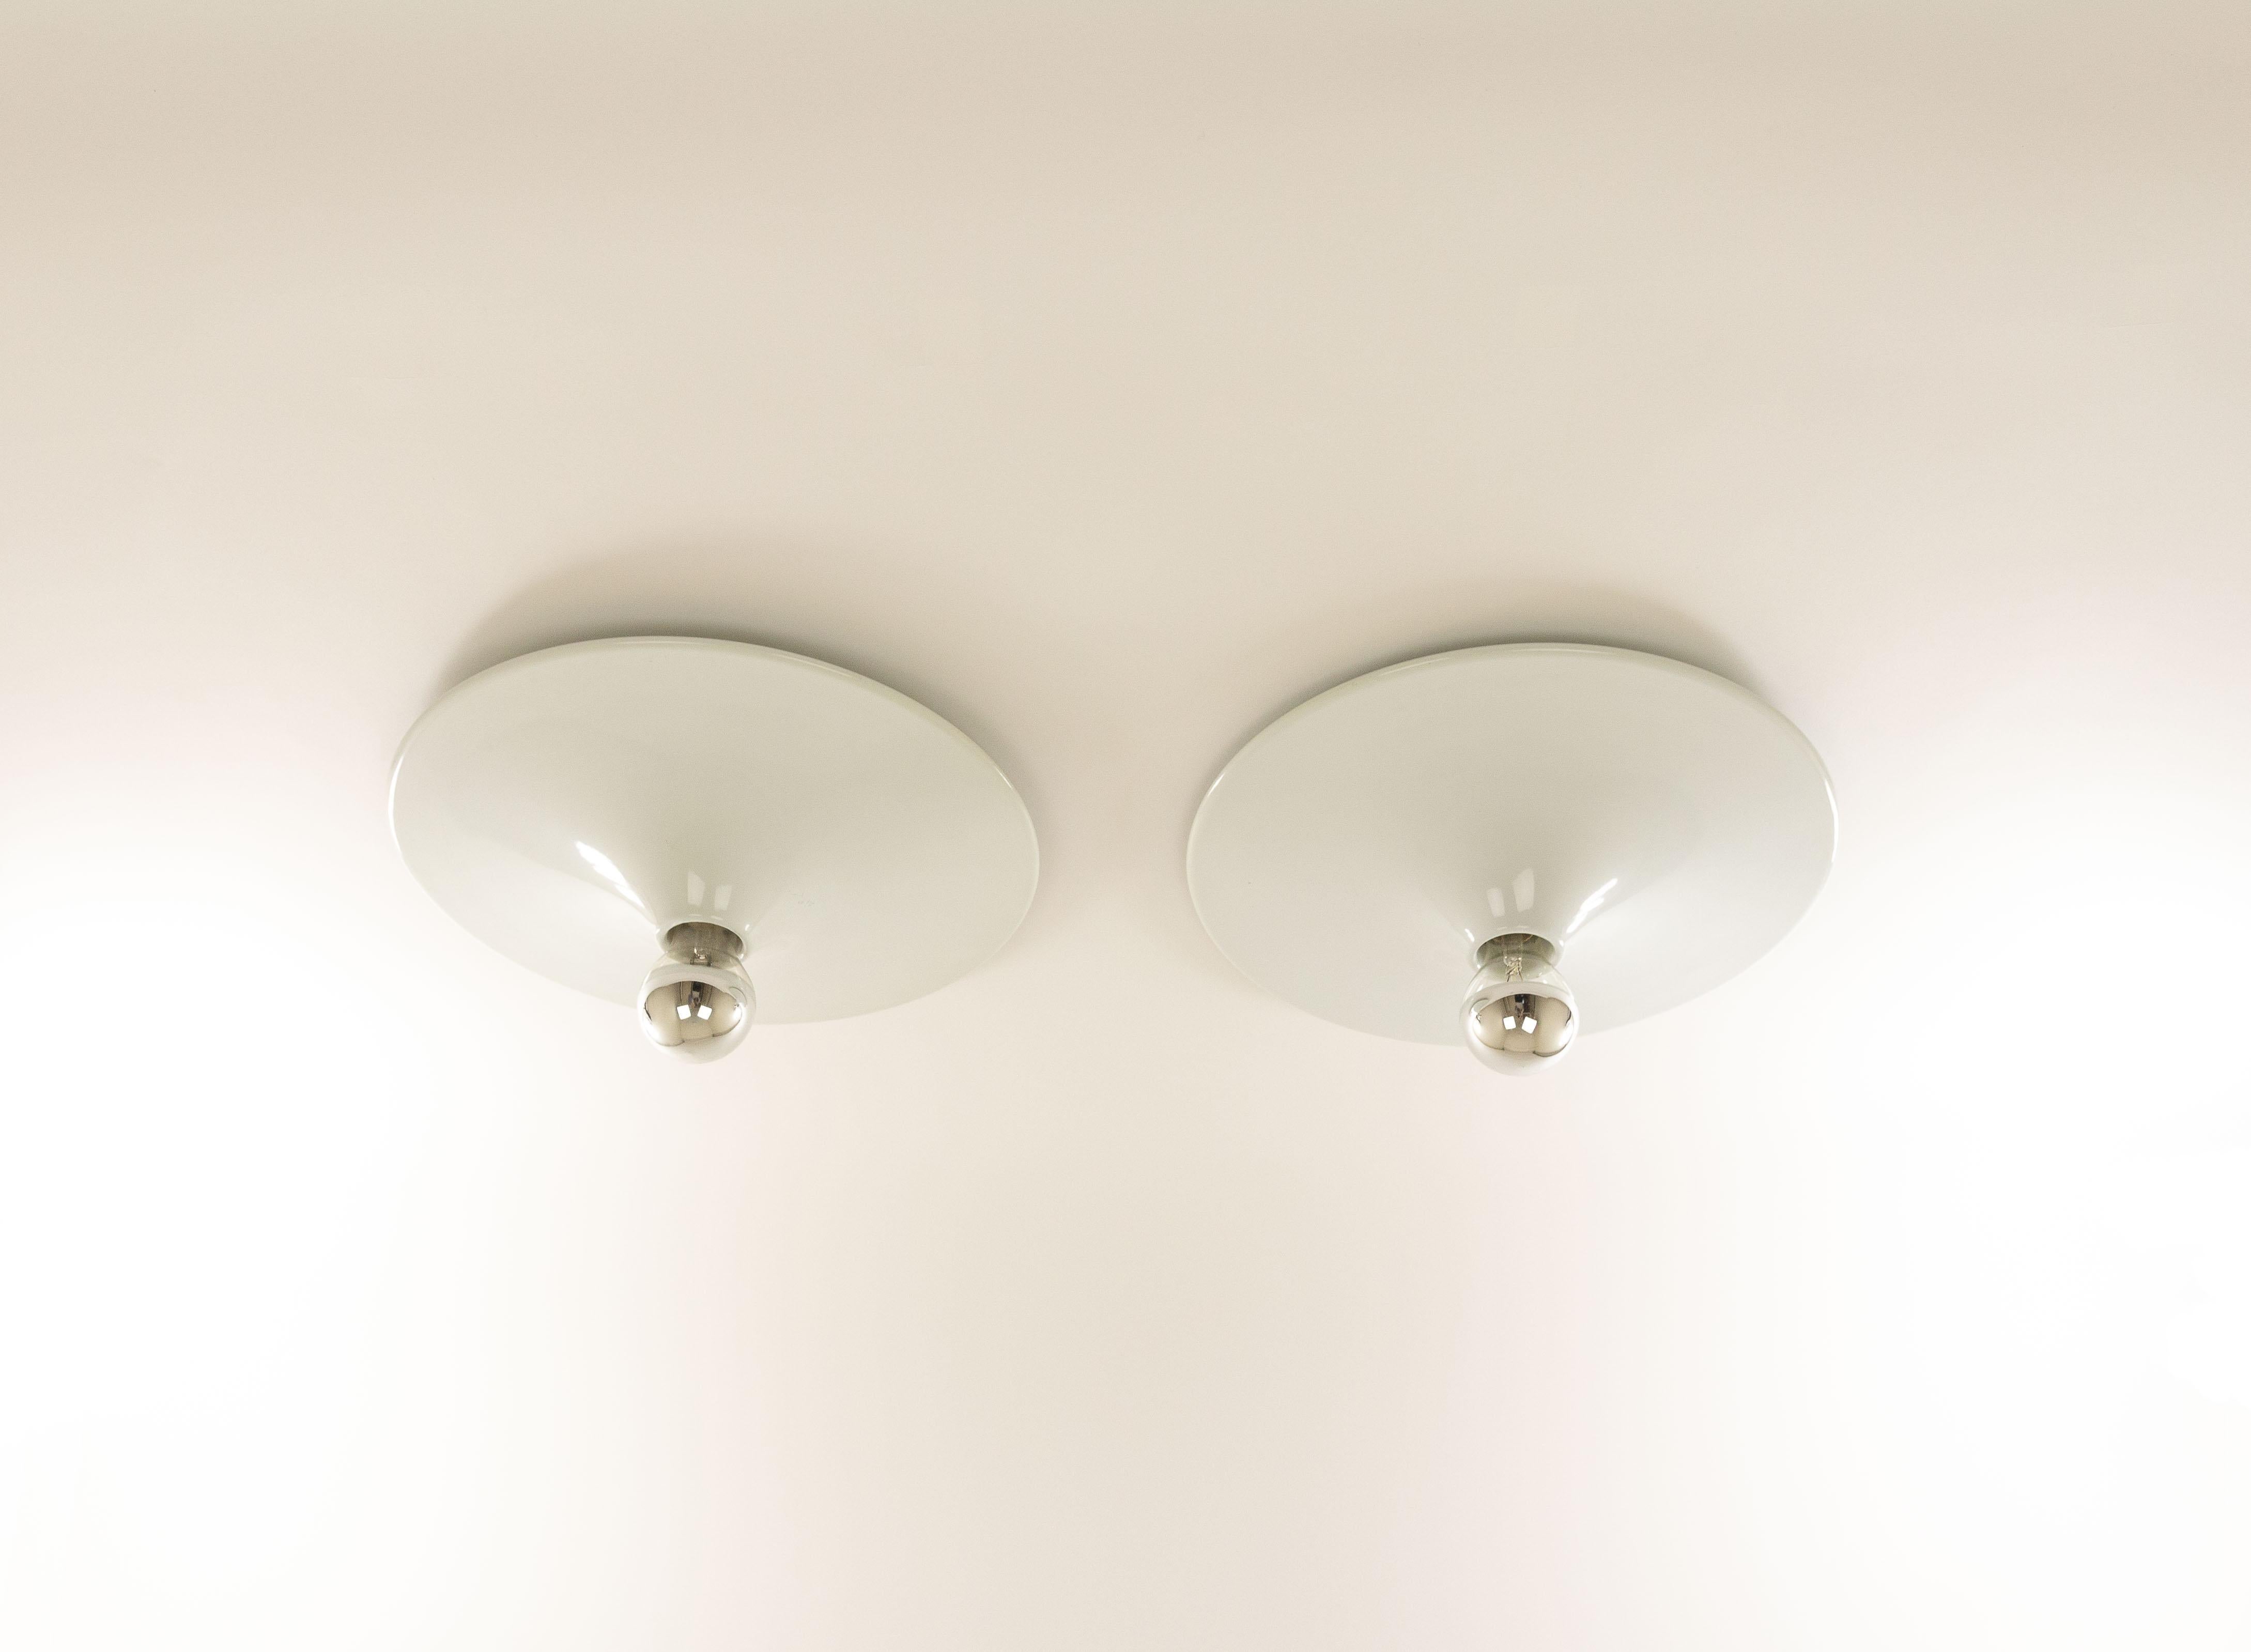 Italian Pair of Ceiling or Wall Lamps by Gianluigi Gorgoni for Stilnovo, 1970s